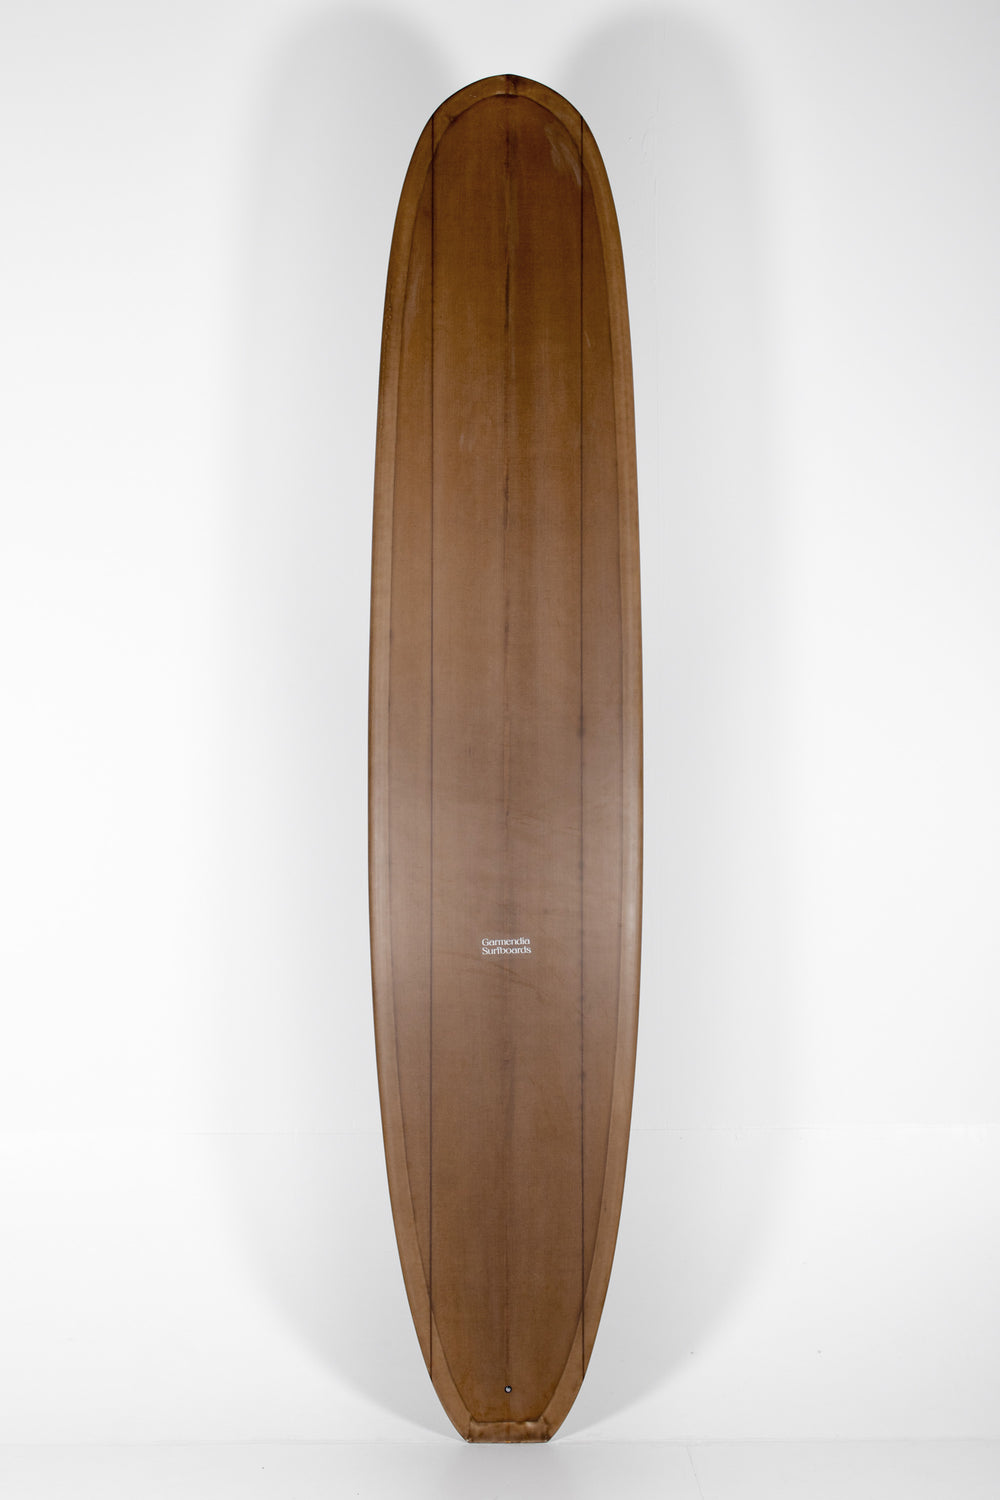 Garmendia Surfboards - NOSERIDER - 9’5